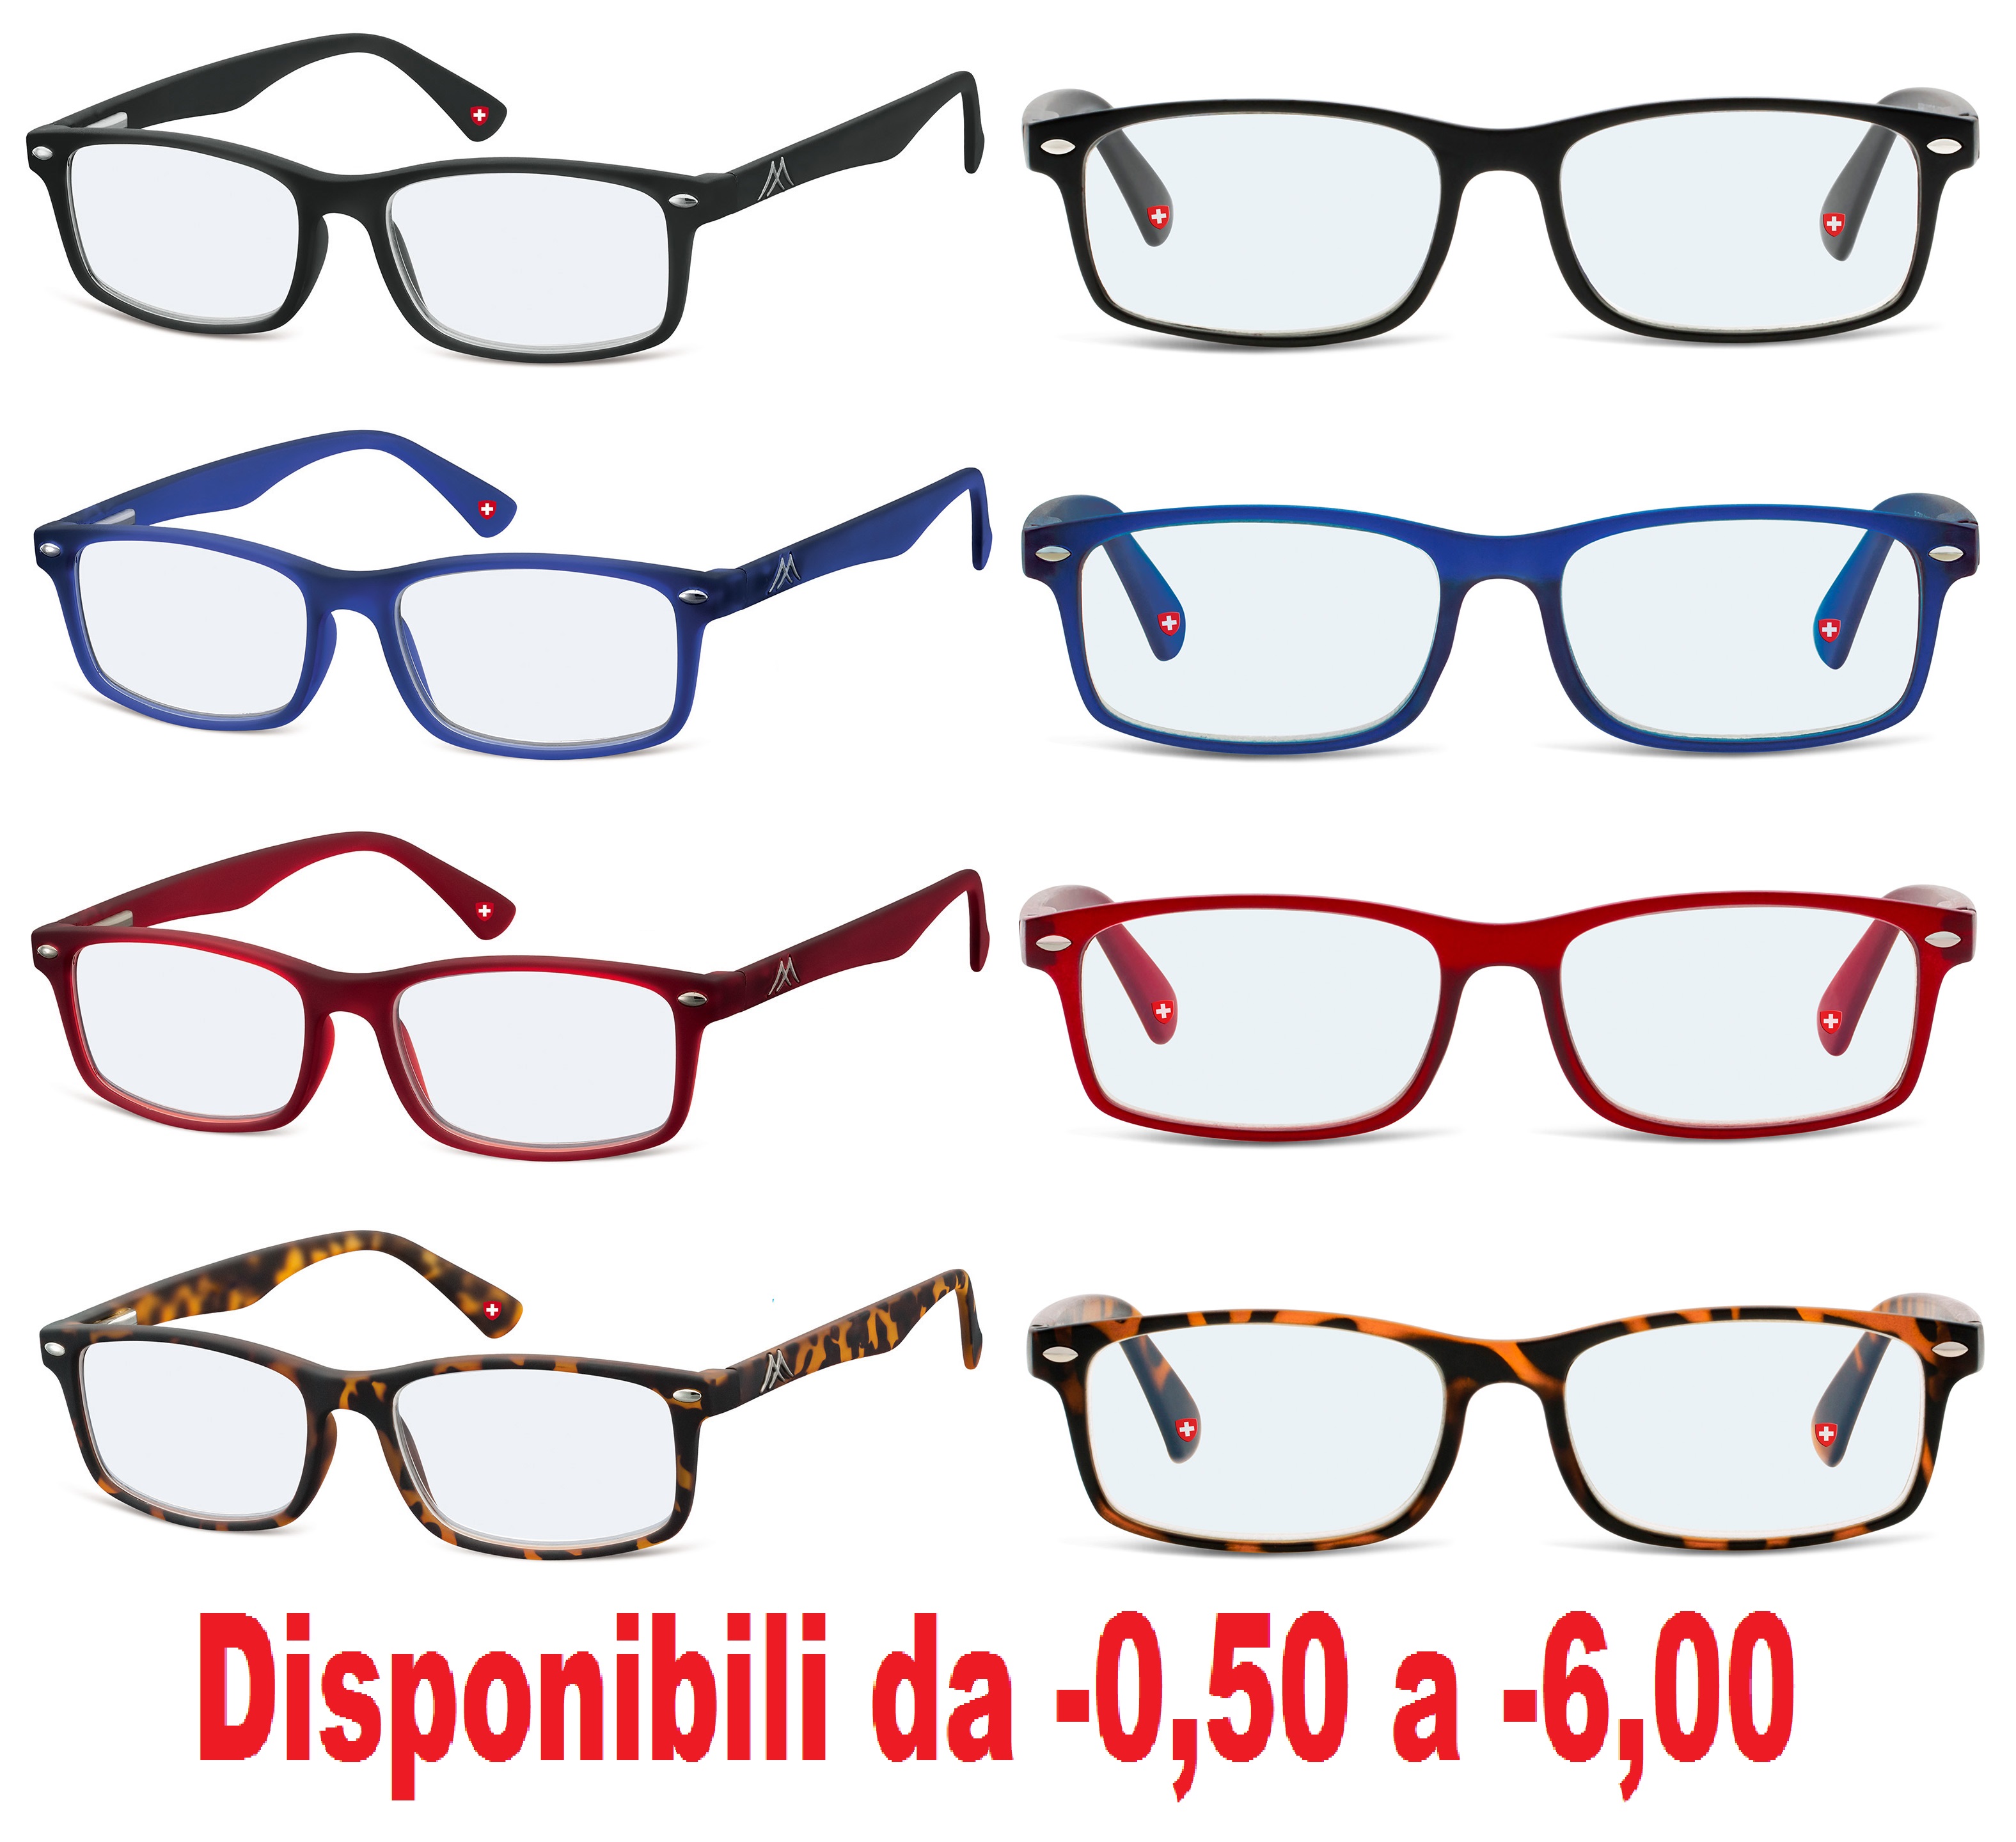 occhiali da vista graduati per miopia uomo donna occhiale per computer da pc lenti graduate antiriflesso montatura rettangolari lenti neutre occhiale squadrati unisex blu rossi montature tartarugati havana tartaruga riposanti da riposo graduati diottrie -1 -2 -3 -4 -5 -6 -0.50 -1.50 -2.50 -3.50 -4.50 -5.50 -50 occhiali da miope per miopia antiriflesso lenti sottili per miope